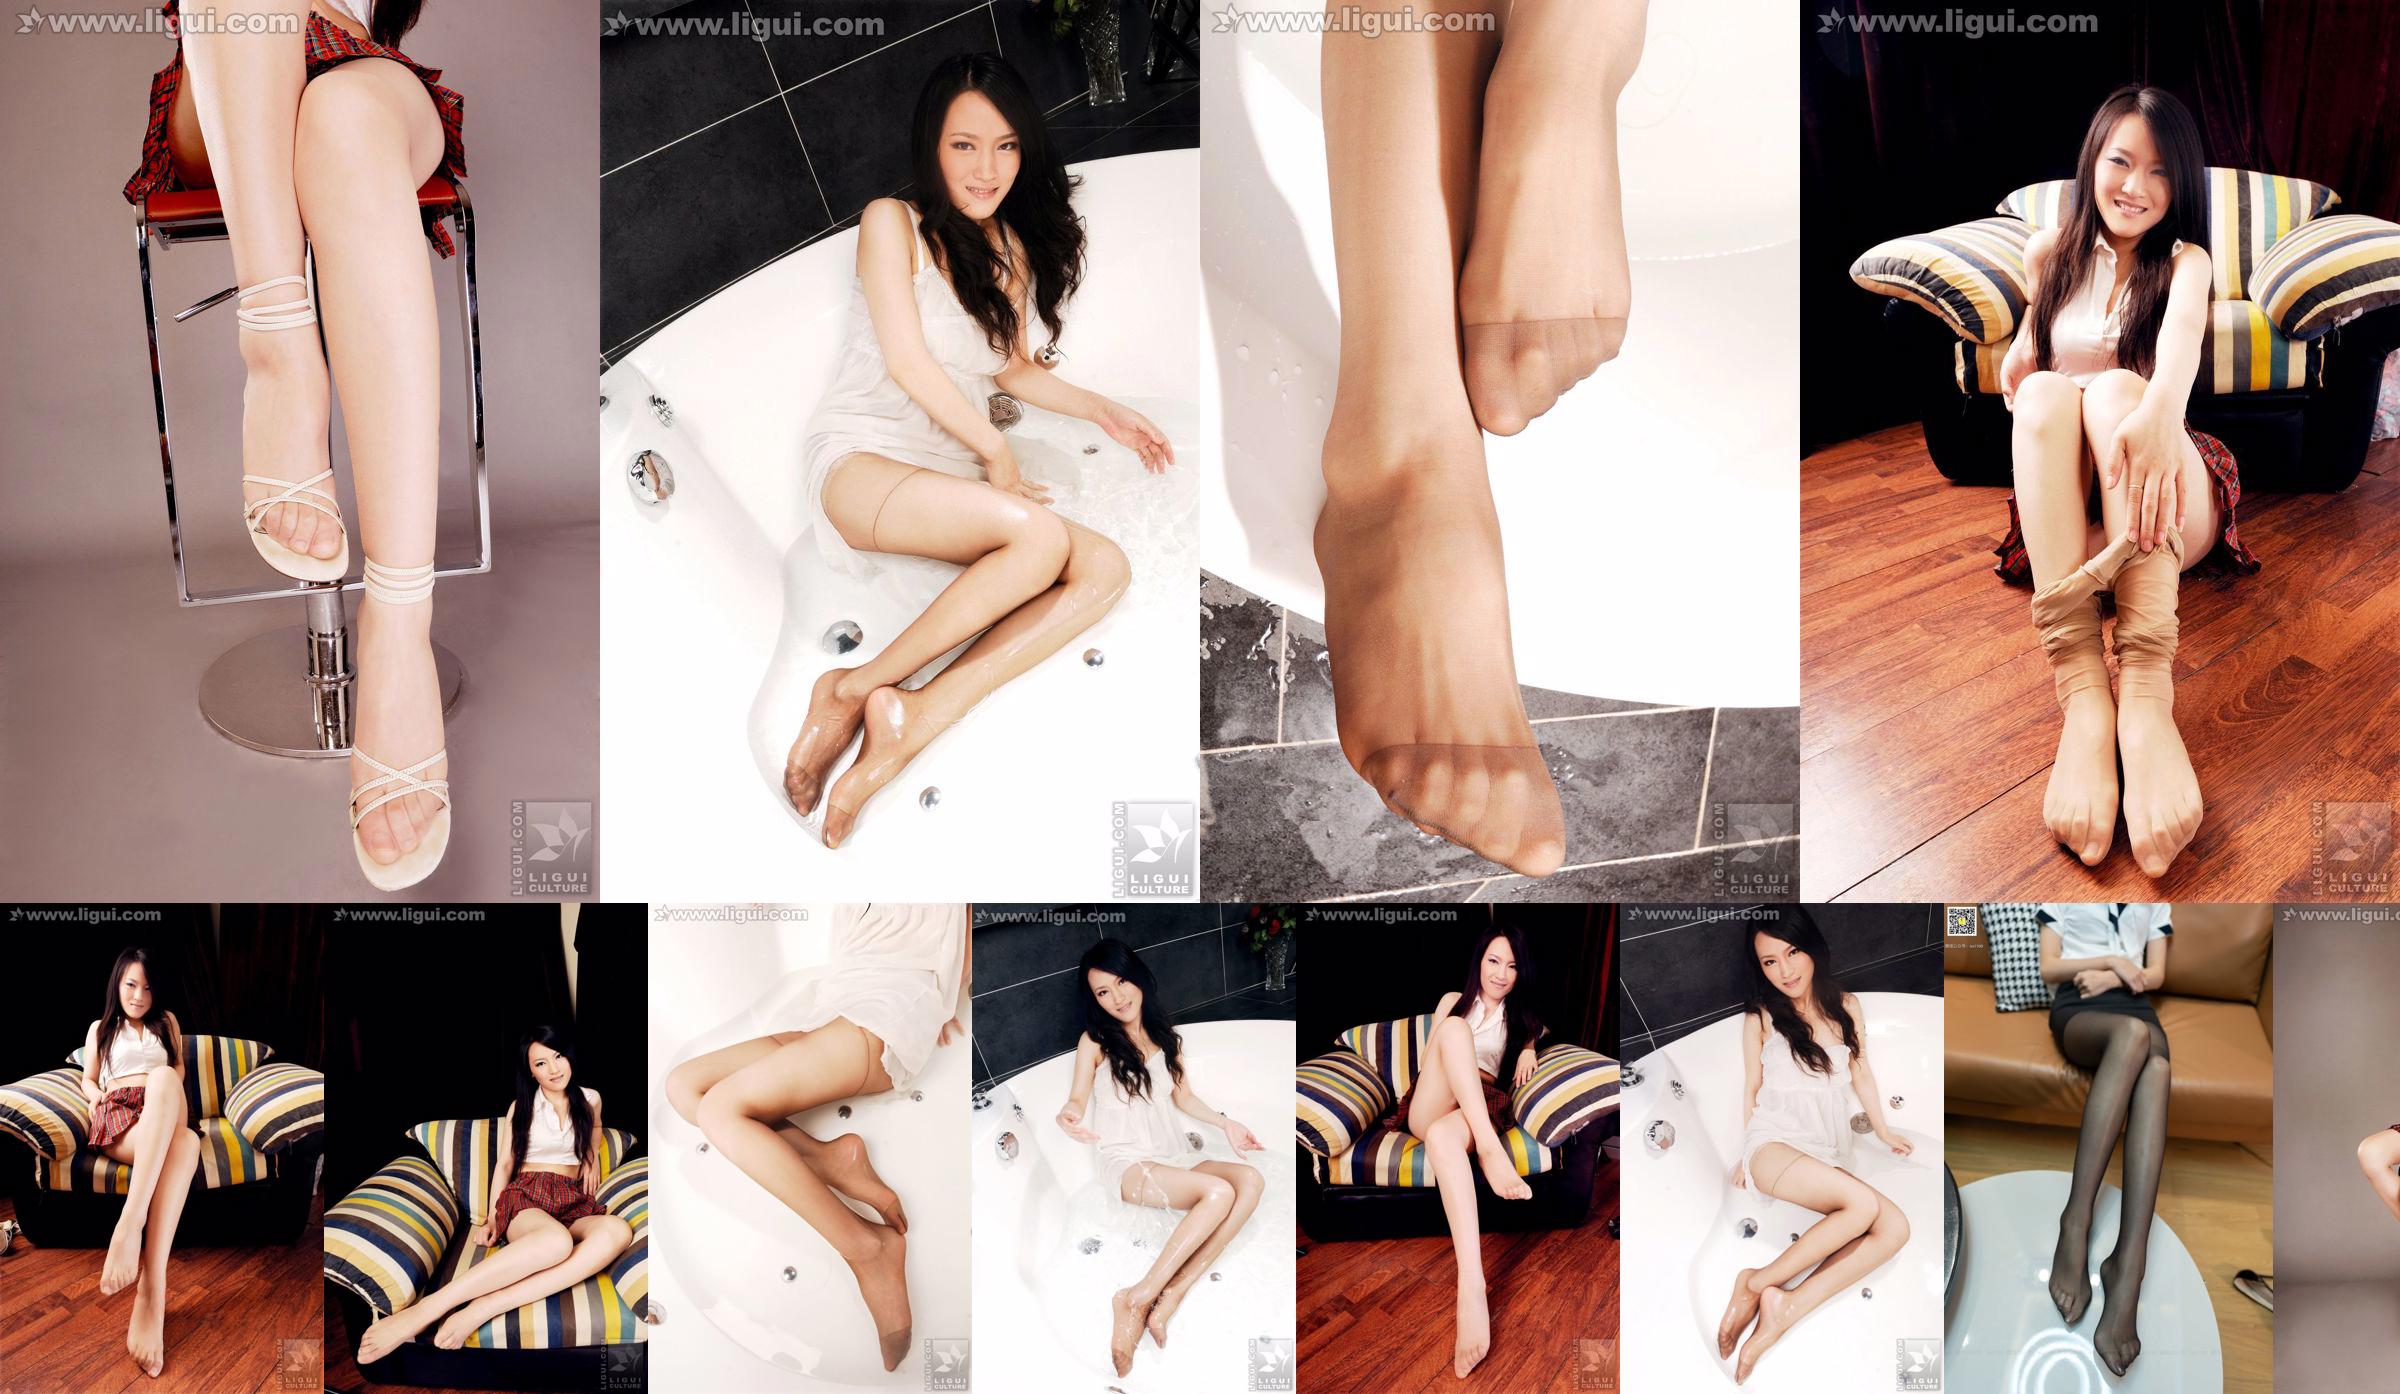 นางแบบเหวินถิง "เท้าที่สวยงามและบริสุทธิ์" [丽 G LiGui] Silk Foot Photo Picture No.21164f หน้า 2